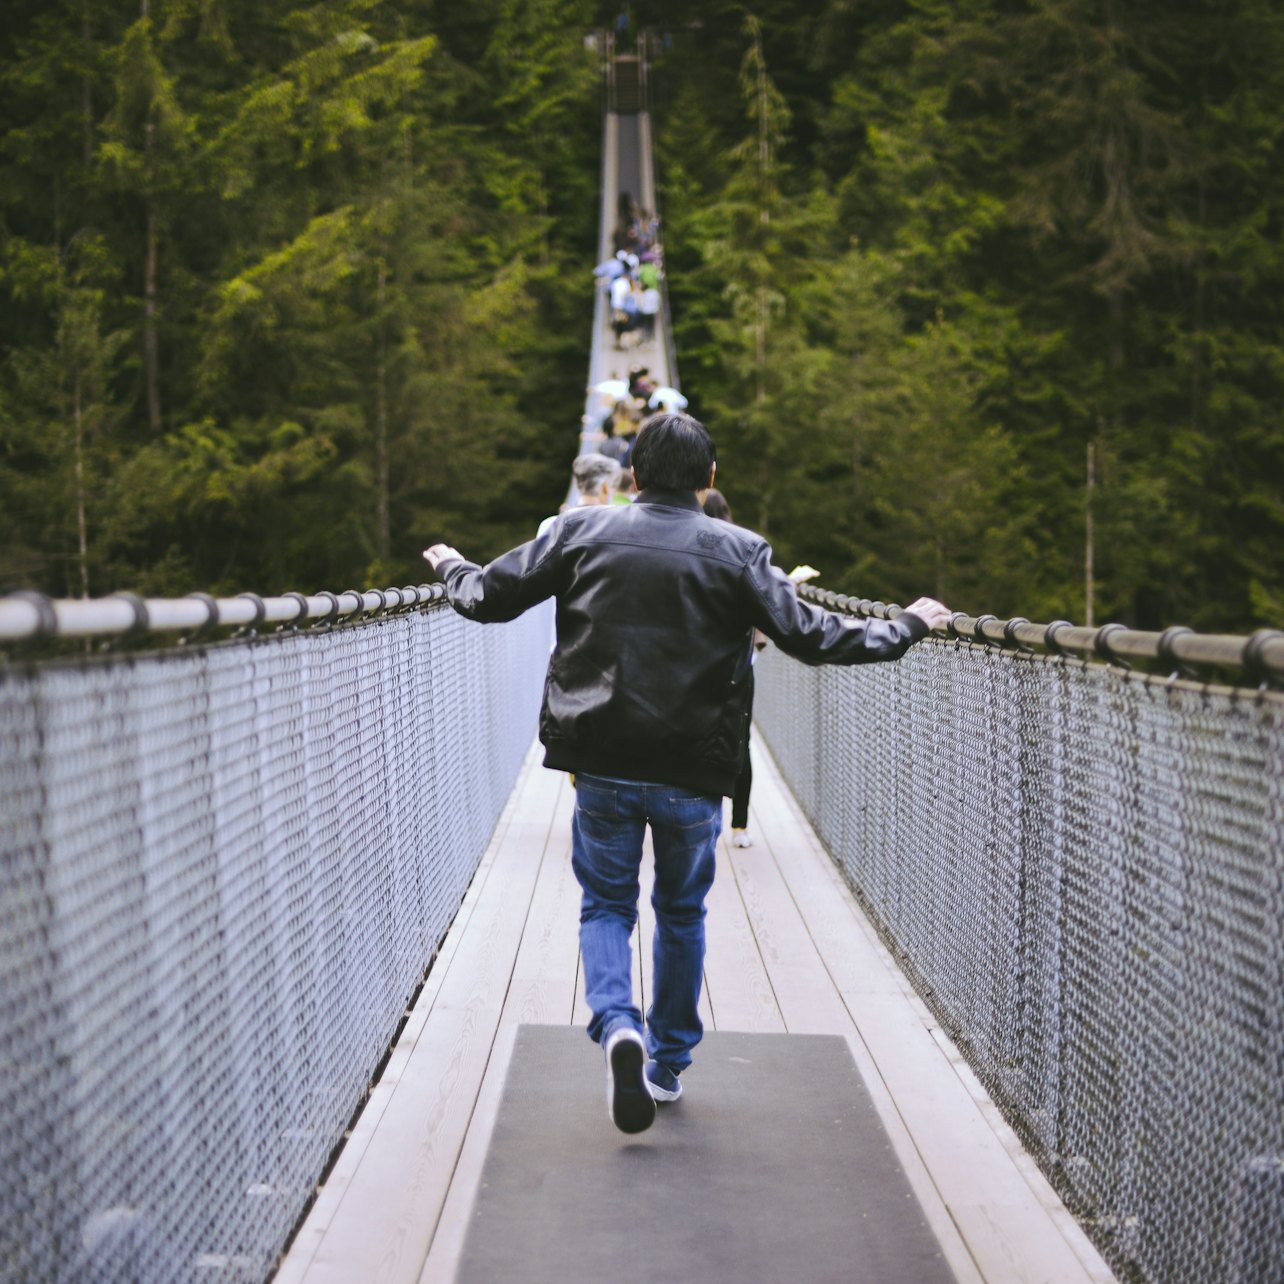 Capilano Suspension Bridge Park - Acomodações em Vancouver